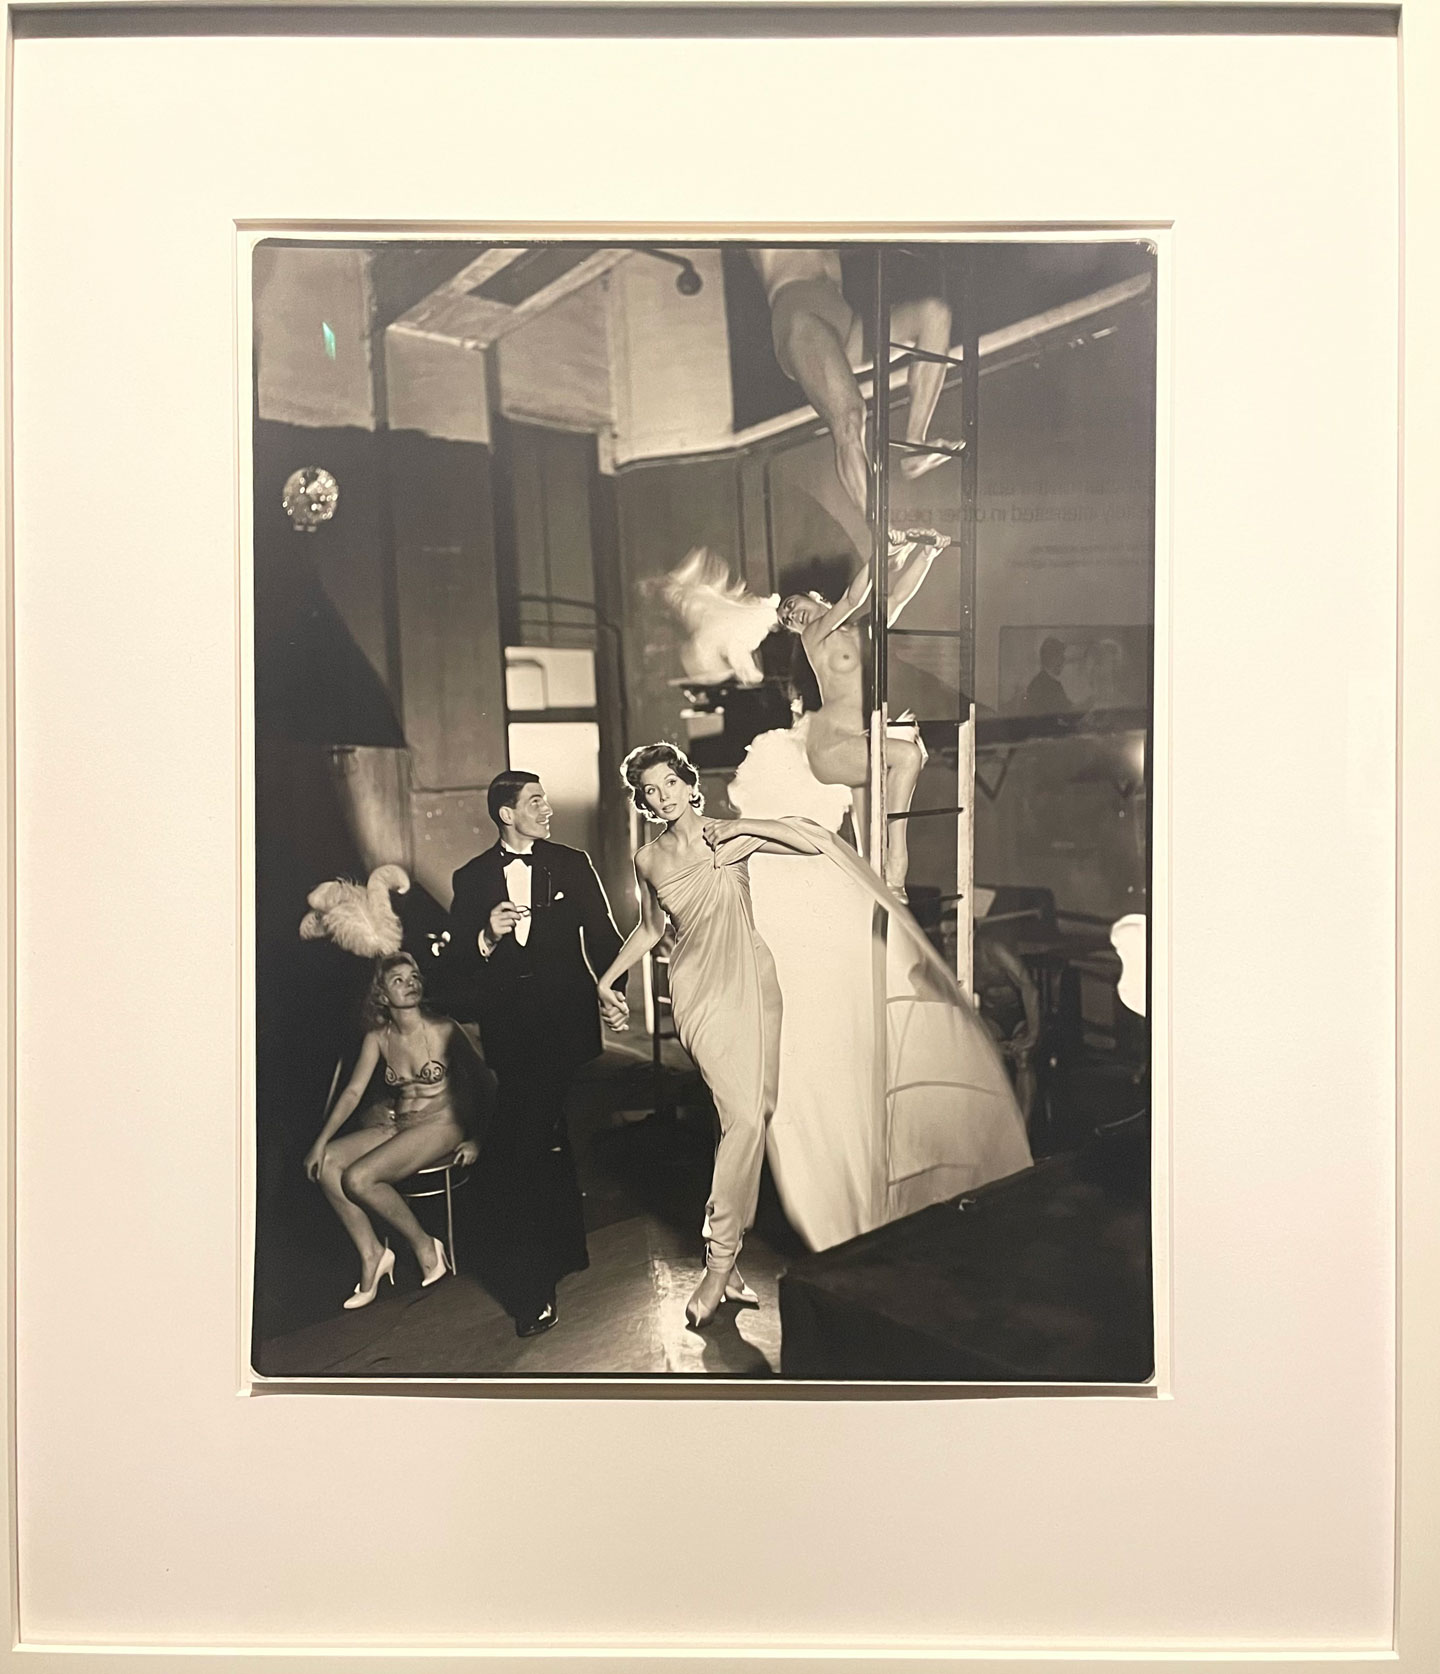 Richard Avedon, "Suzy Parker and Robin Tattersall, Evening Dress by Griffe, Folies-Bergère, Paris," August 1957